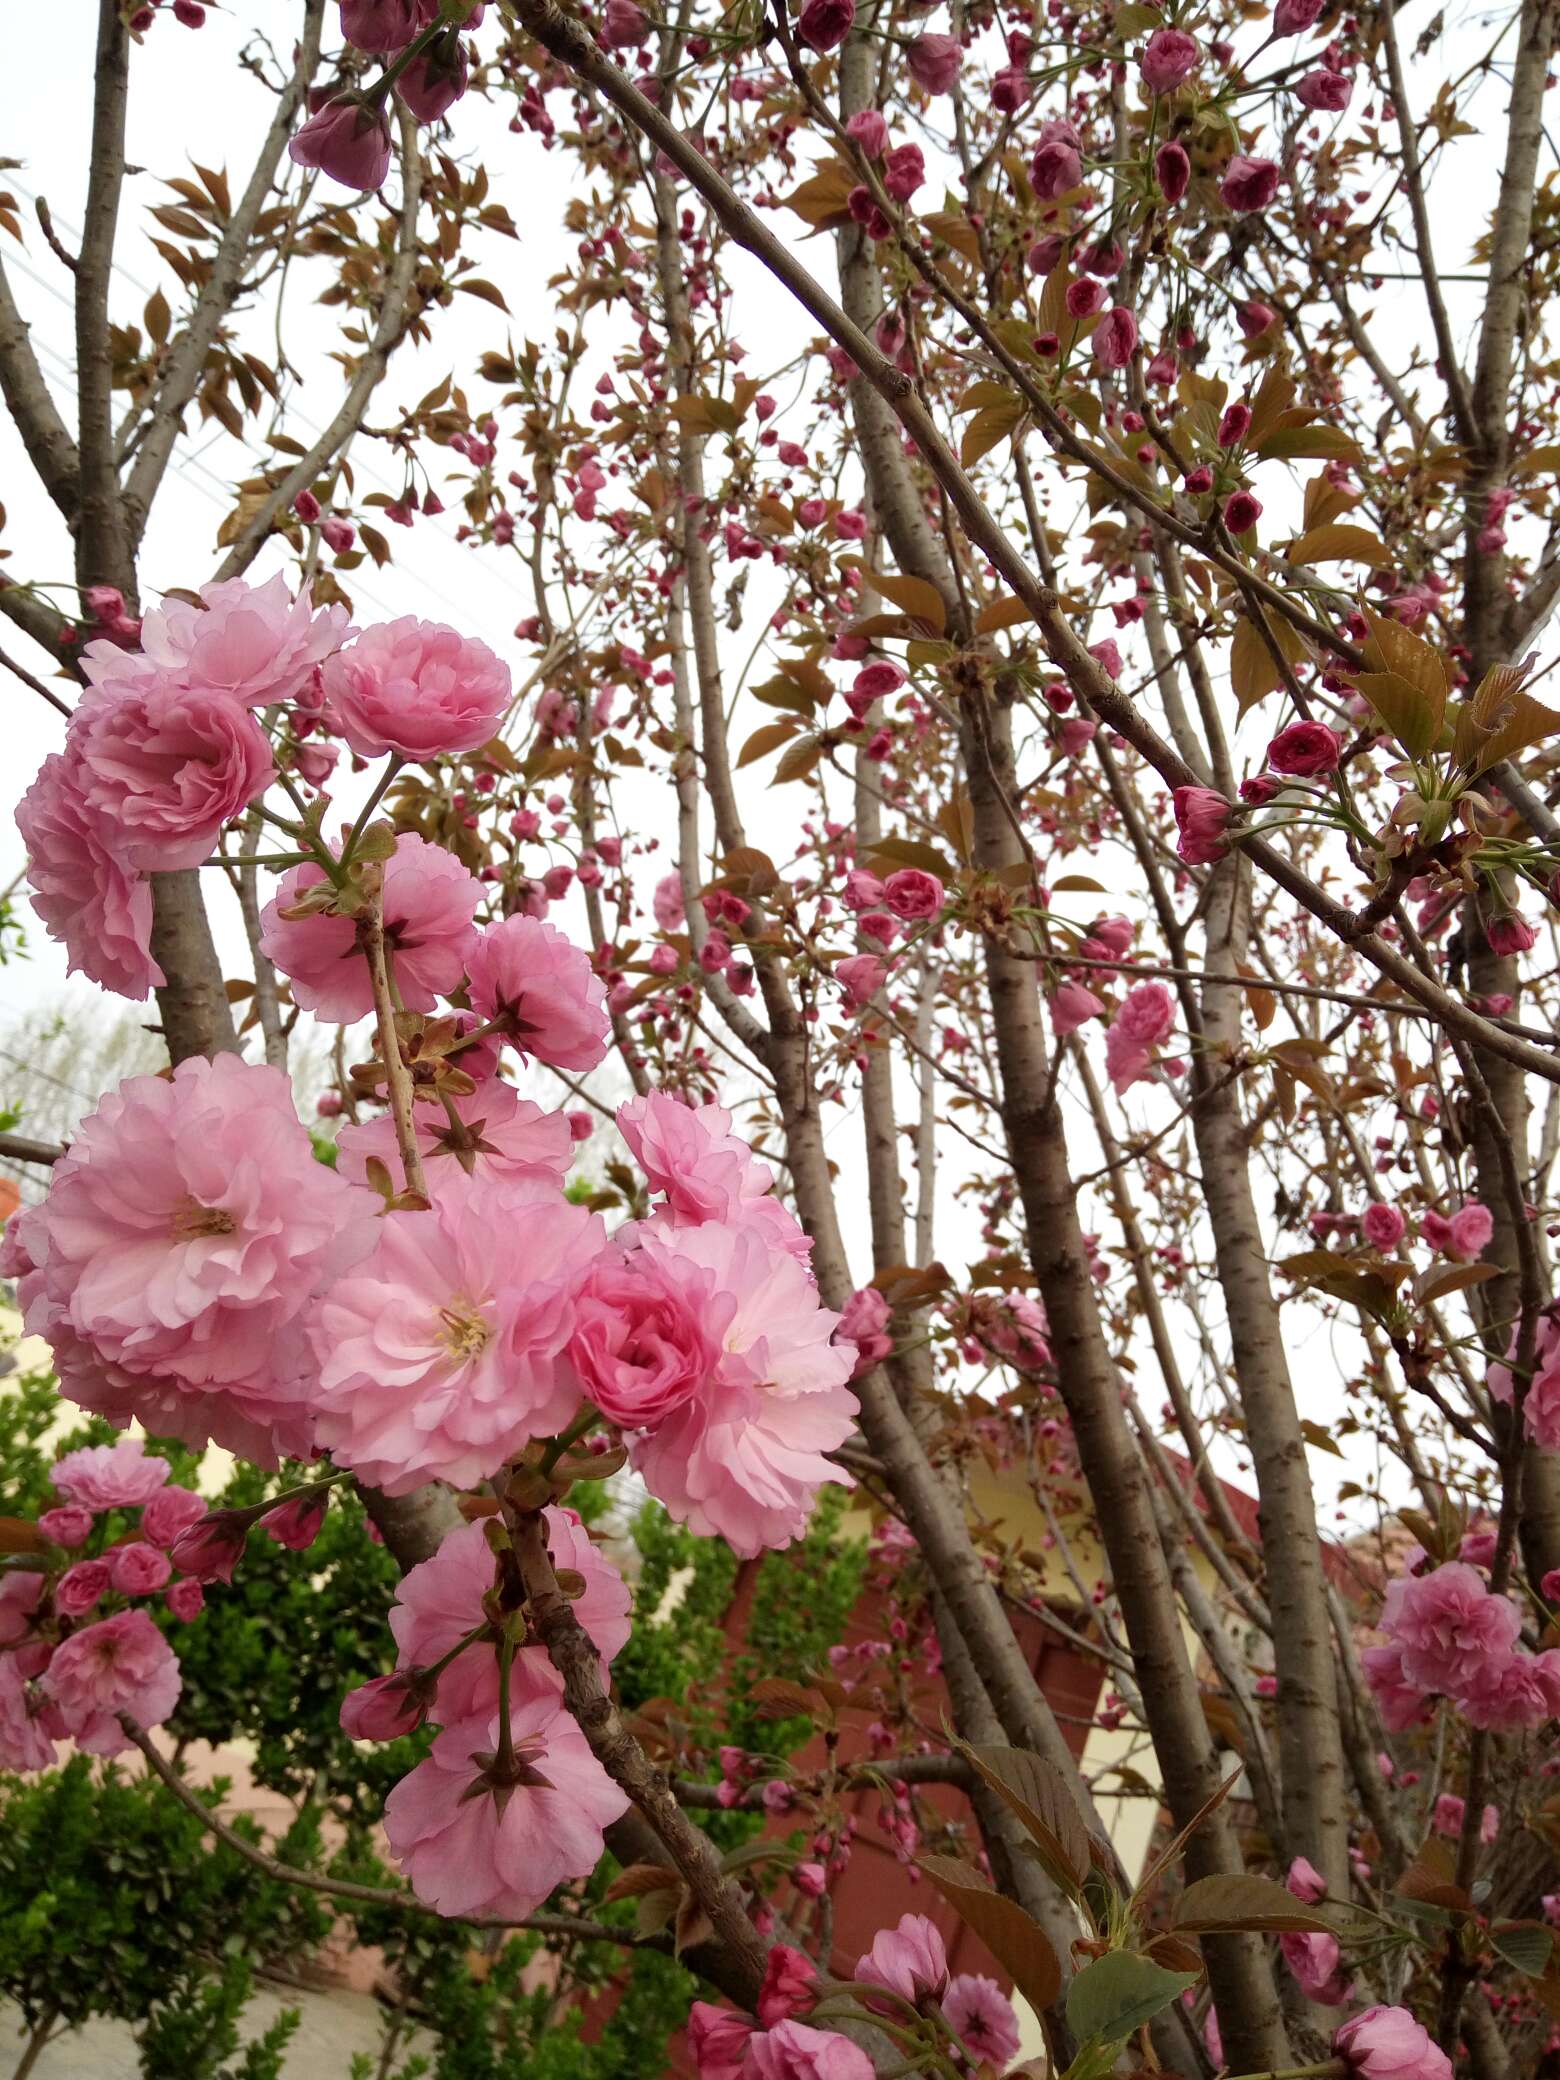 【寻春天】樱花初放,春意悄悄